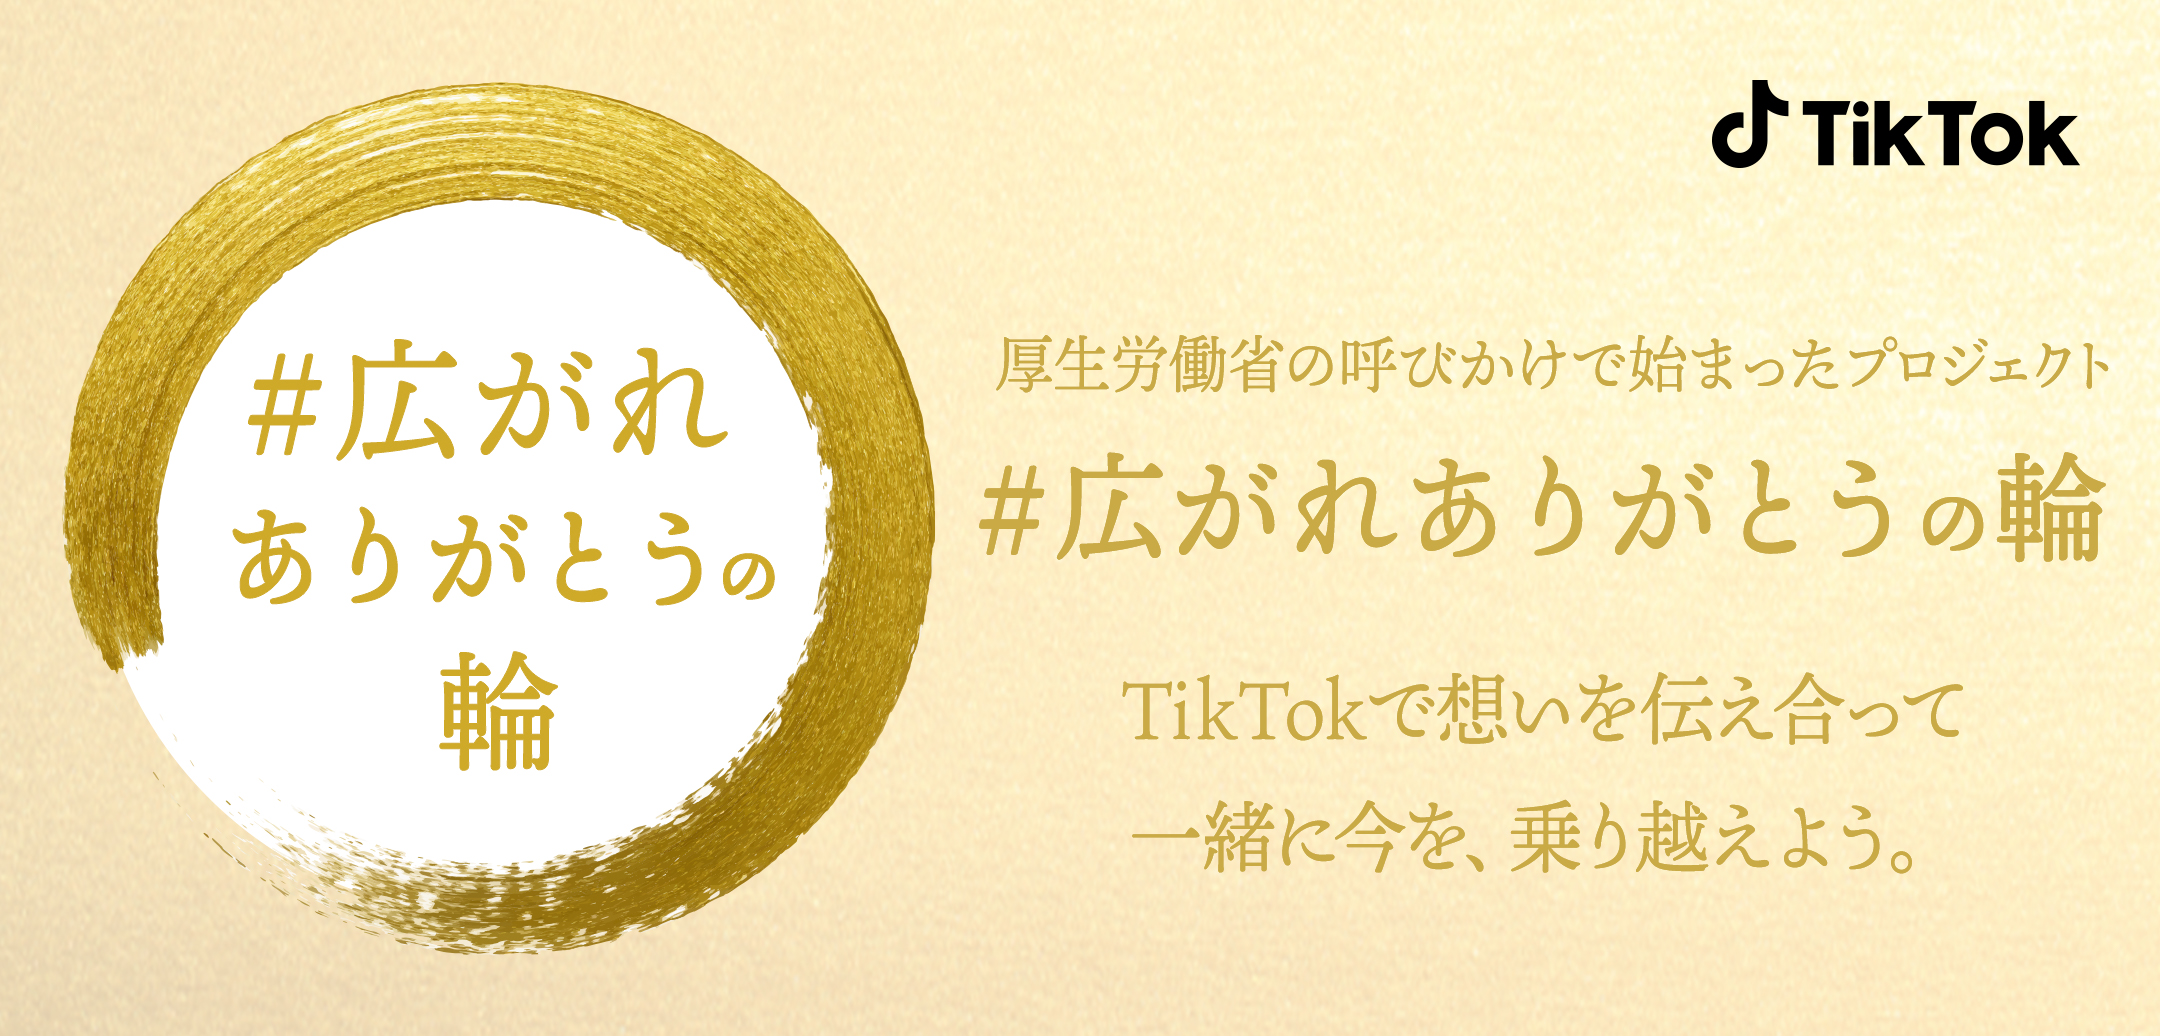 Tiktok 厚生労働省が推進する 広がれありがとうの輪 プロジェクトへ12月14日より参画 Bytedance株式会社のプレスリリース